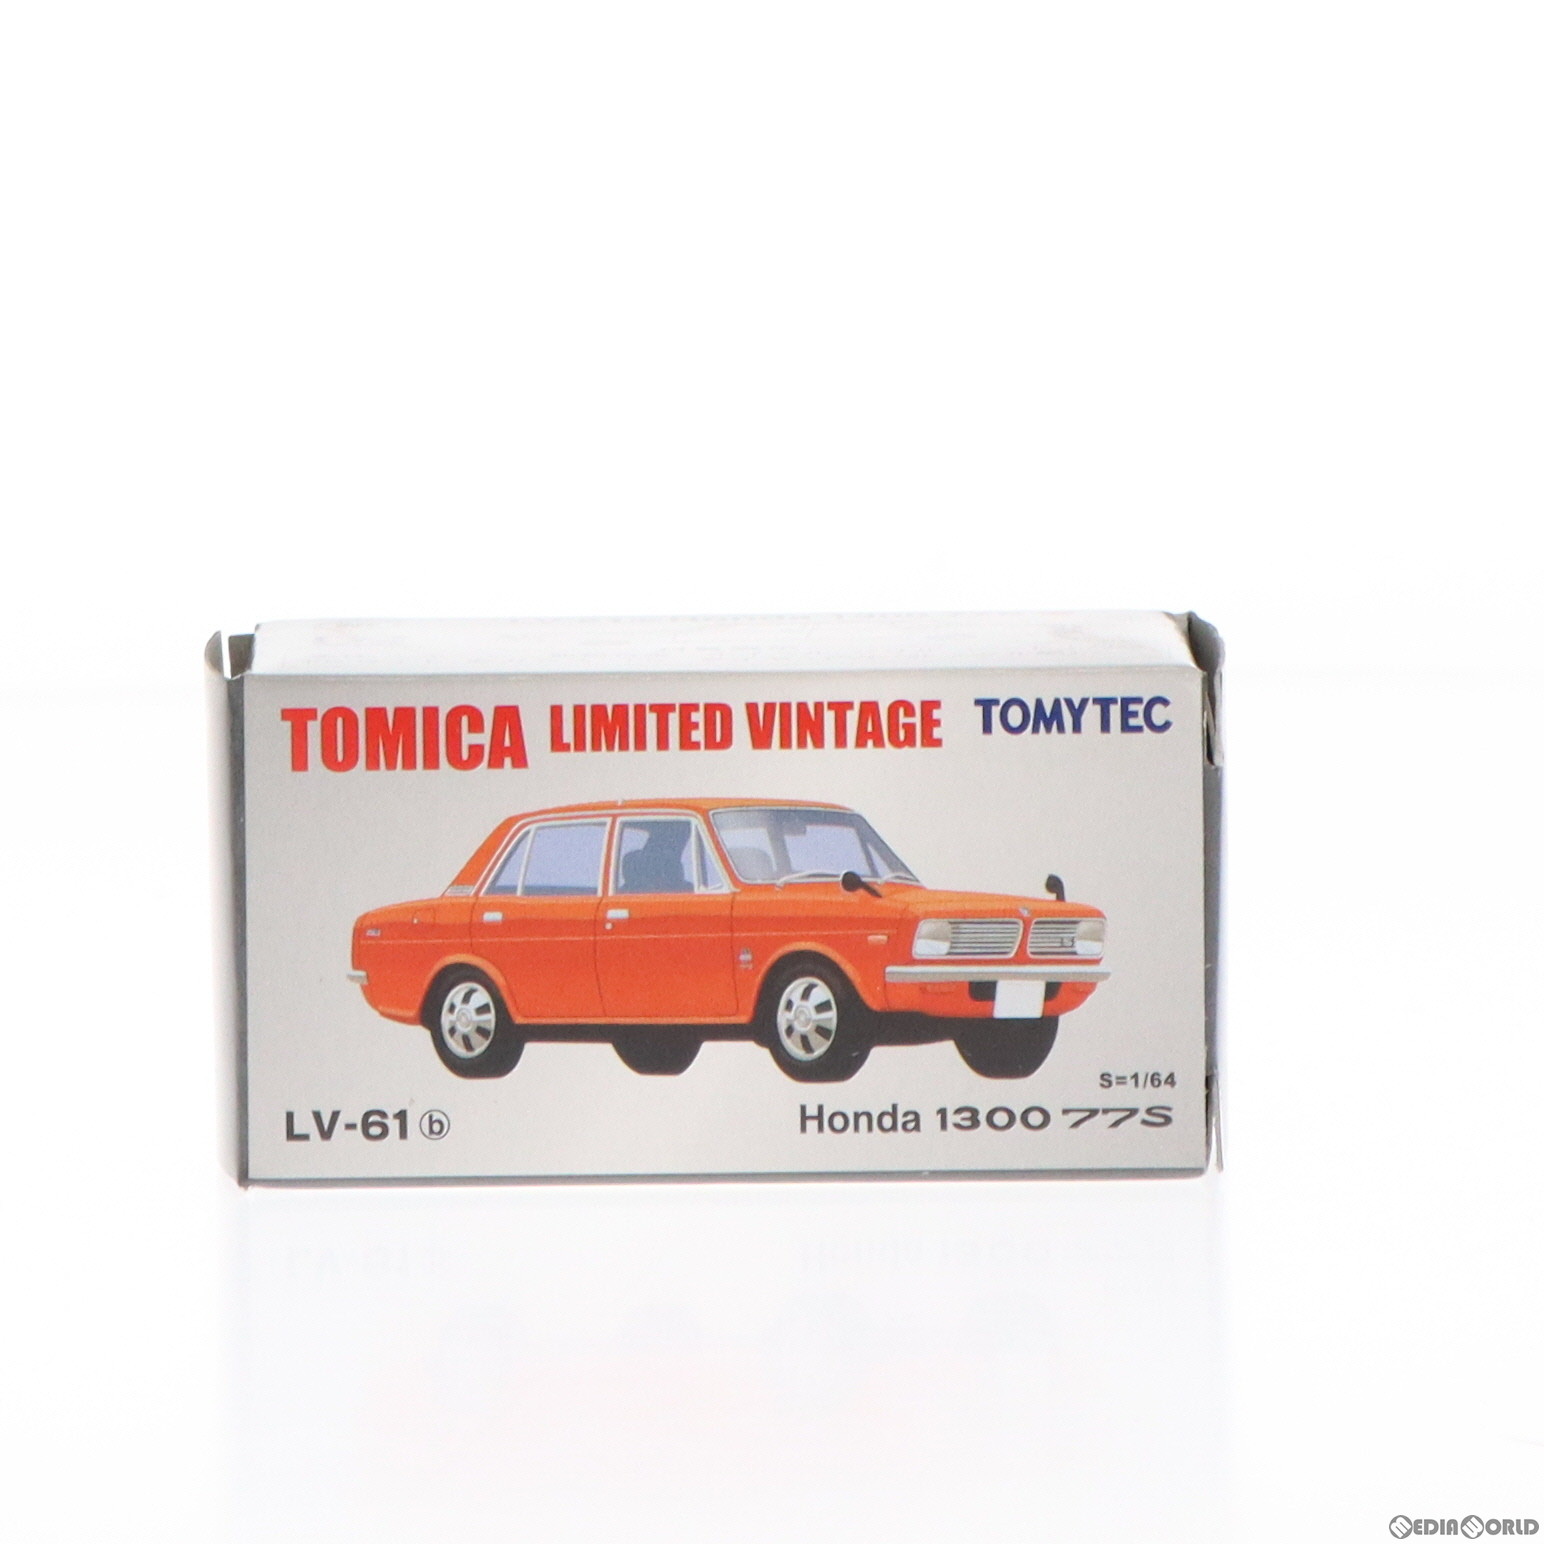 【中古】 MDL トミカリミテッドヴィンテージ 1/64 TLV-61b Honda 1300 77S(レッド) 完成品 ミニカー(217084) TOMYTEC(トミーテック)(20080731)